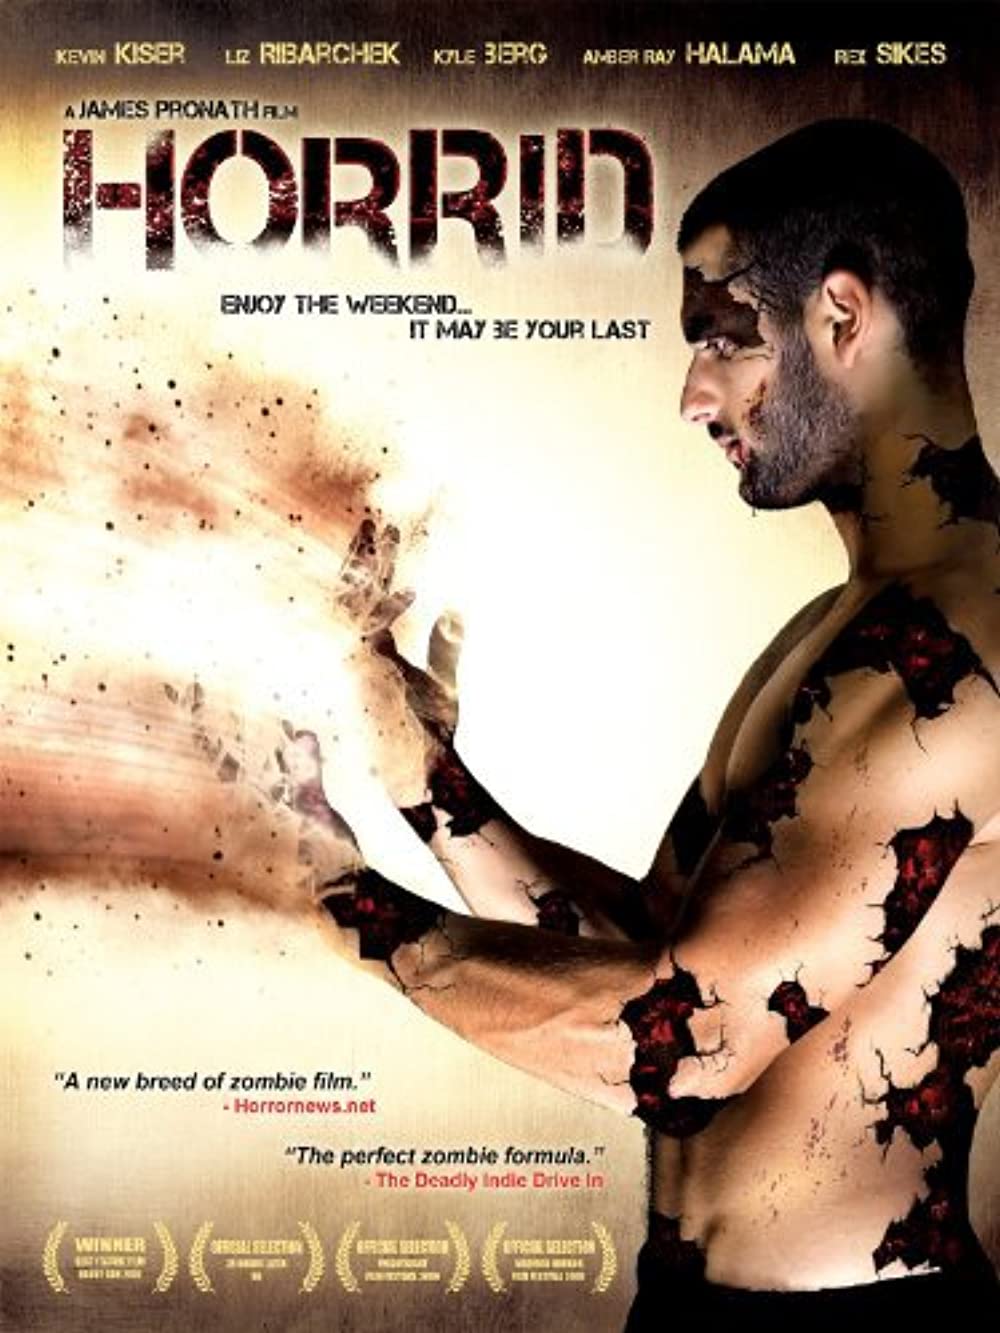 Download Horrid Movie | Horrid Movie